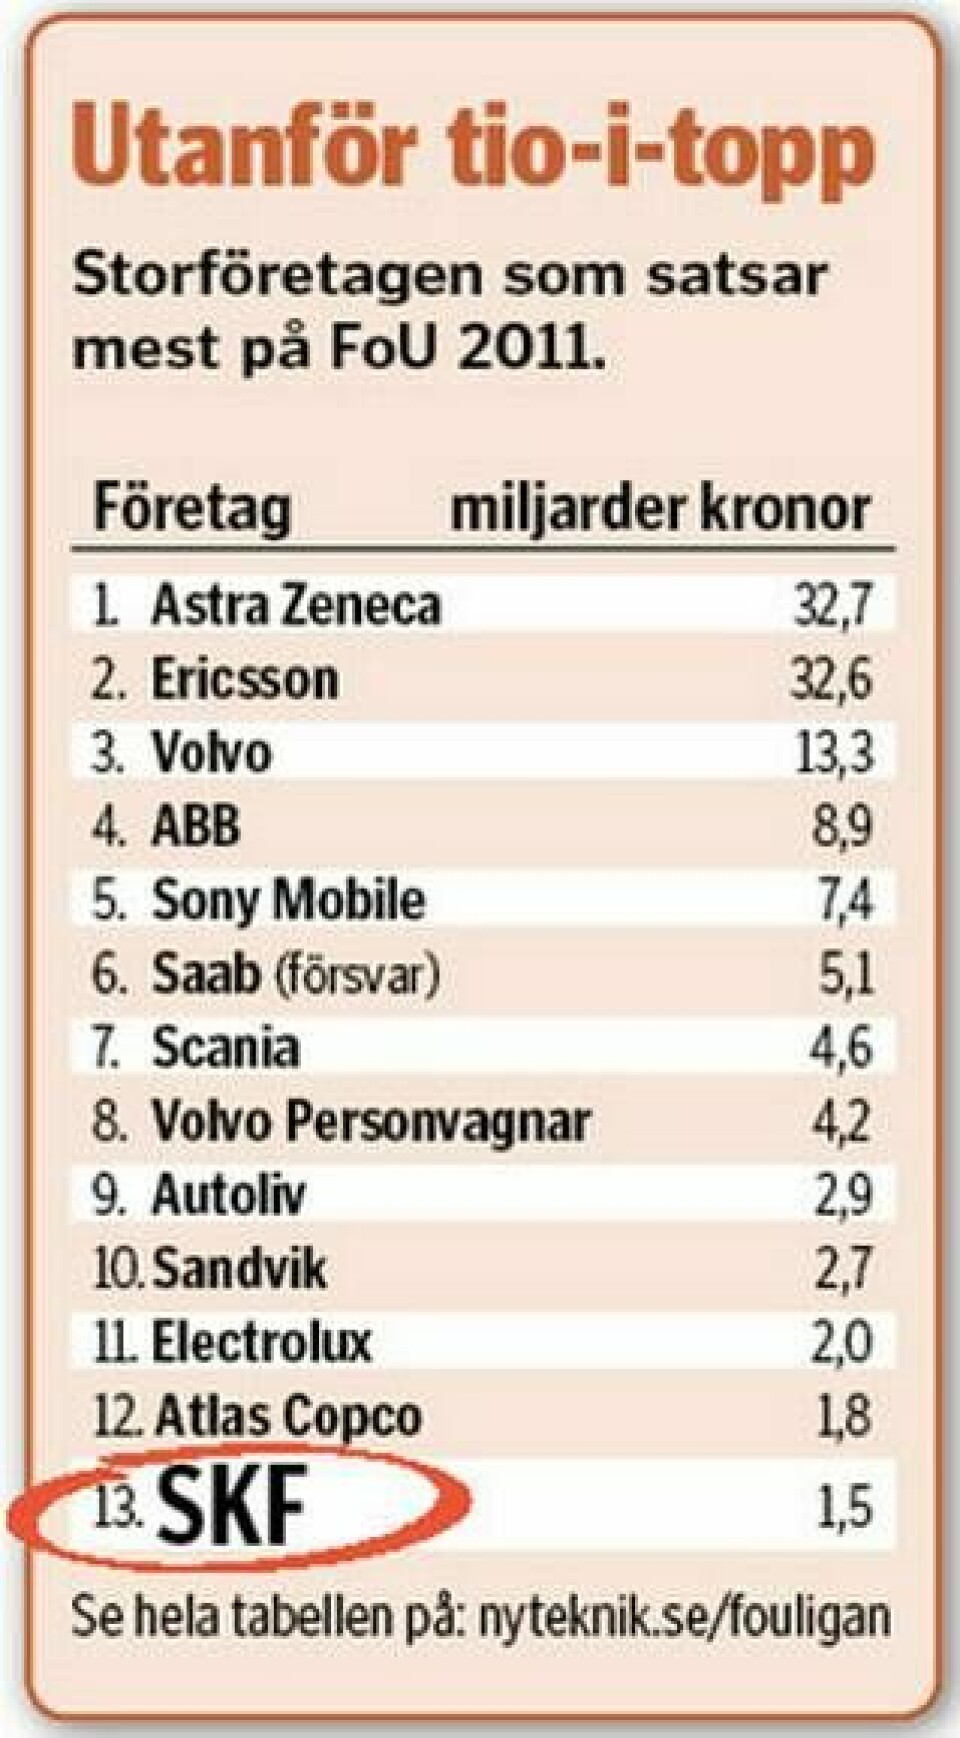 SKF utanför tio-i-topp. Storföretagen som satsade mest på FoU 2011.